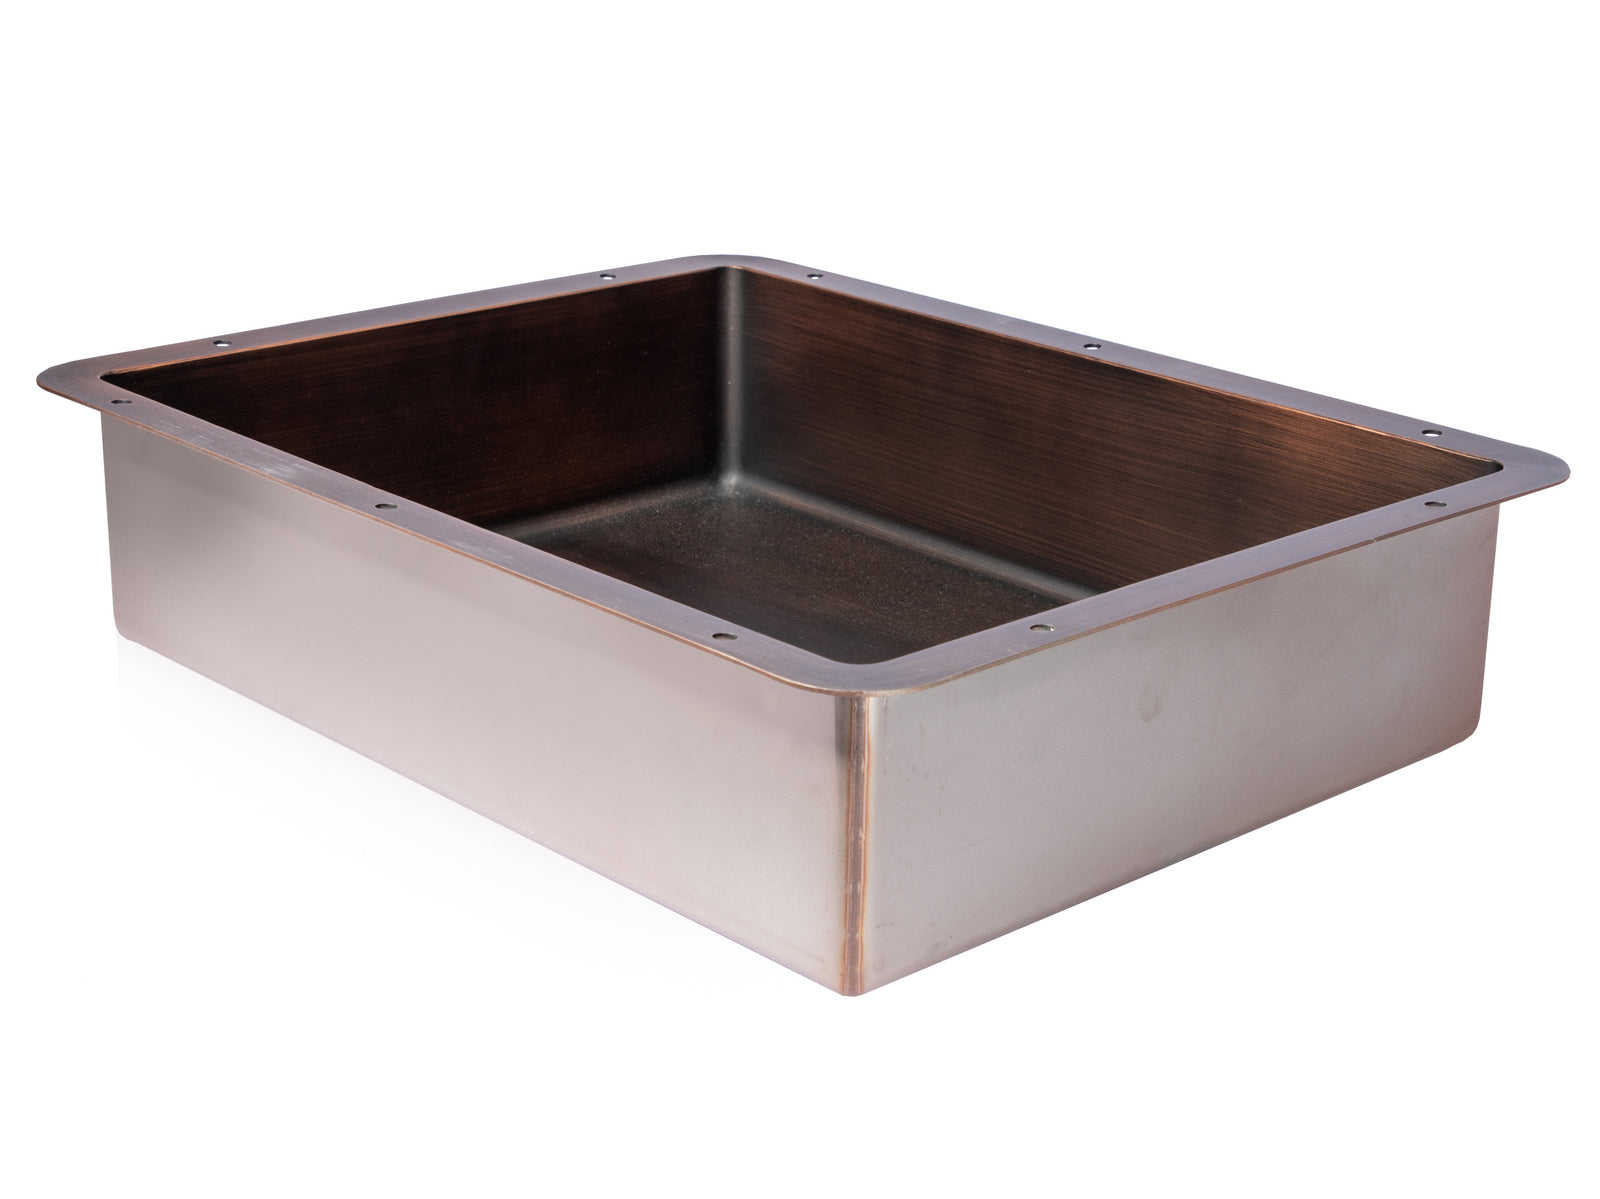 Rectangular 20" x 16" Stainless Steel Undermount Bathroom Sink with Drain in Bronze